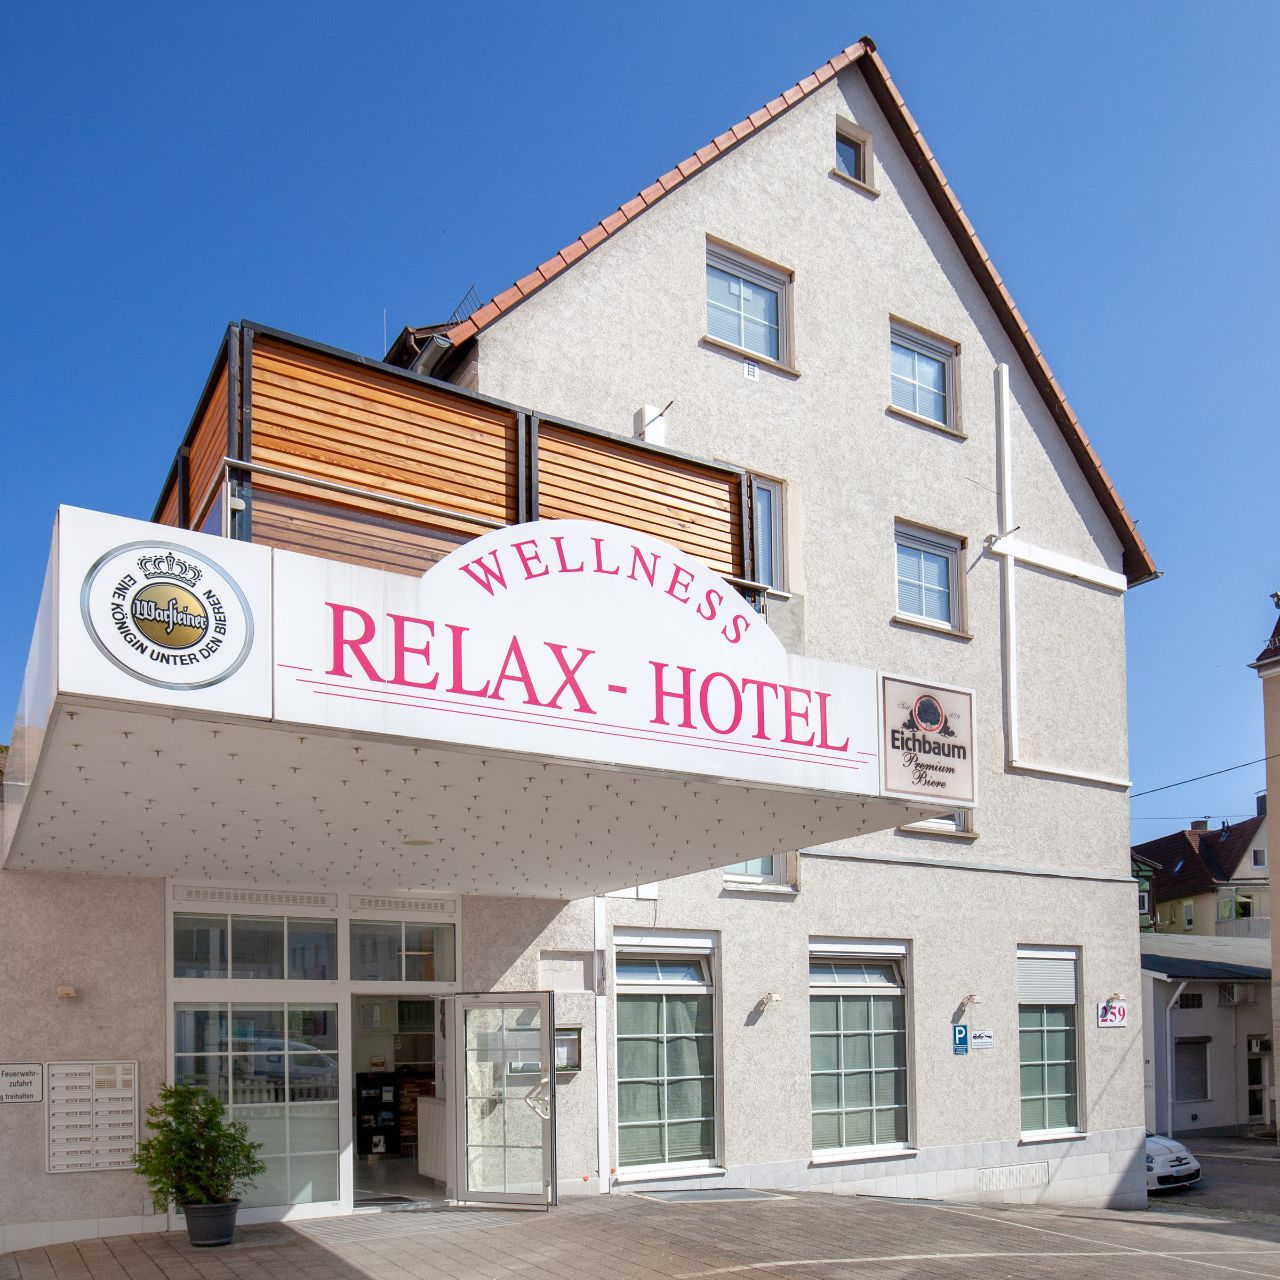 Relax-Hotel Wellnesshotel - Stuttgart pic pic